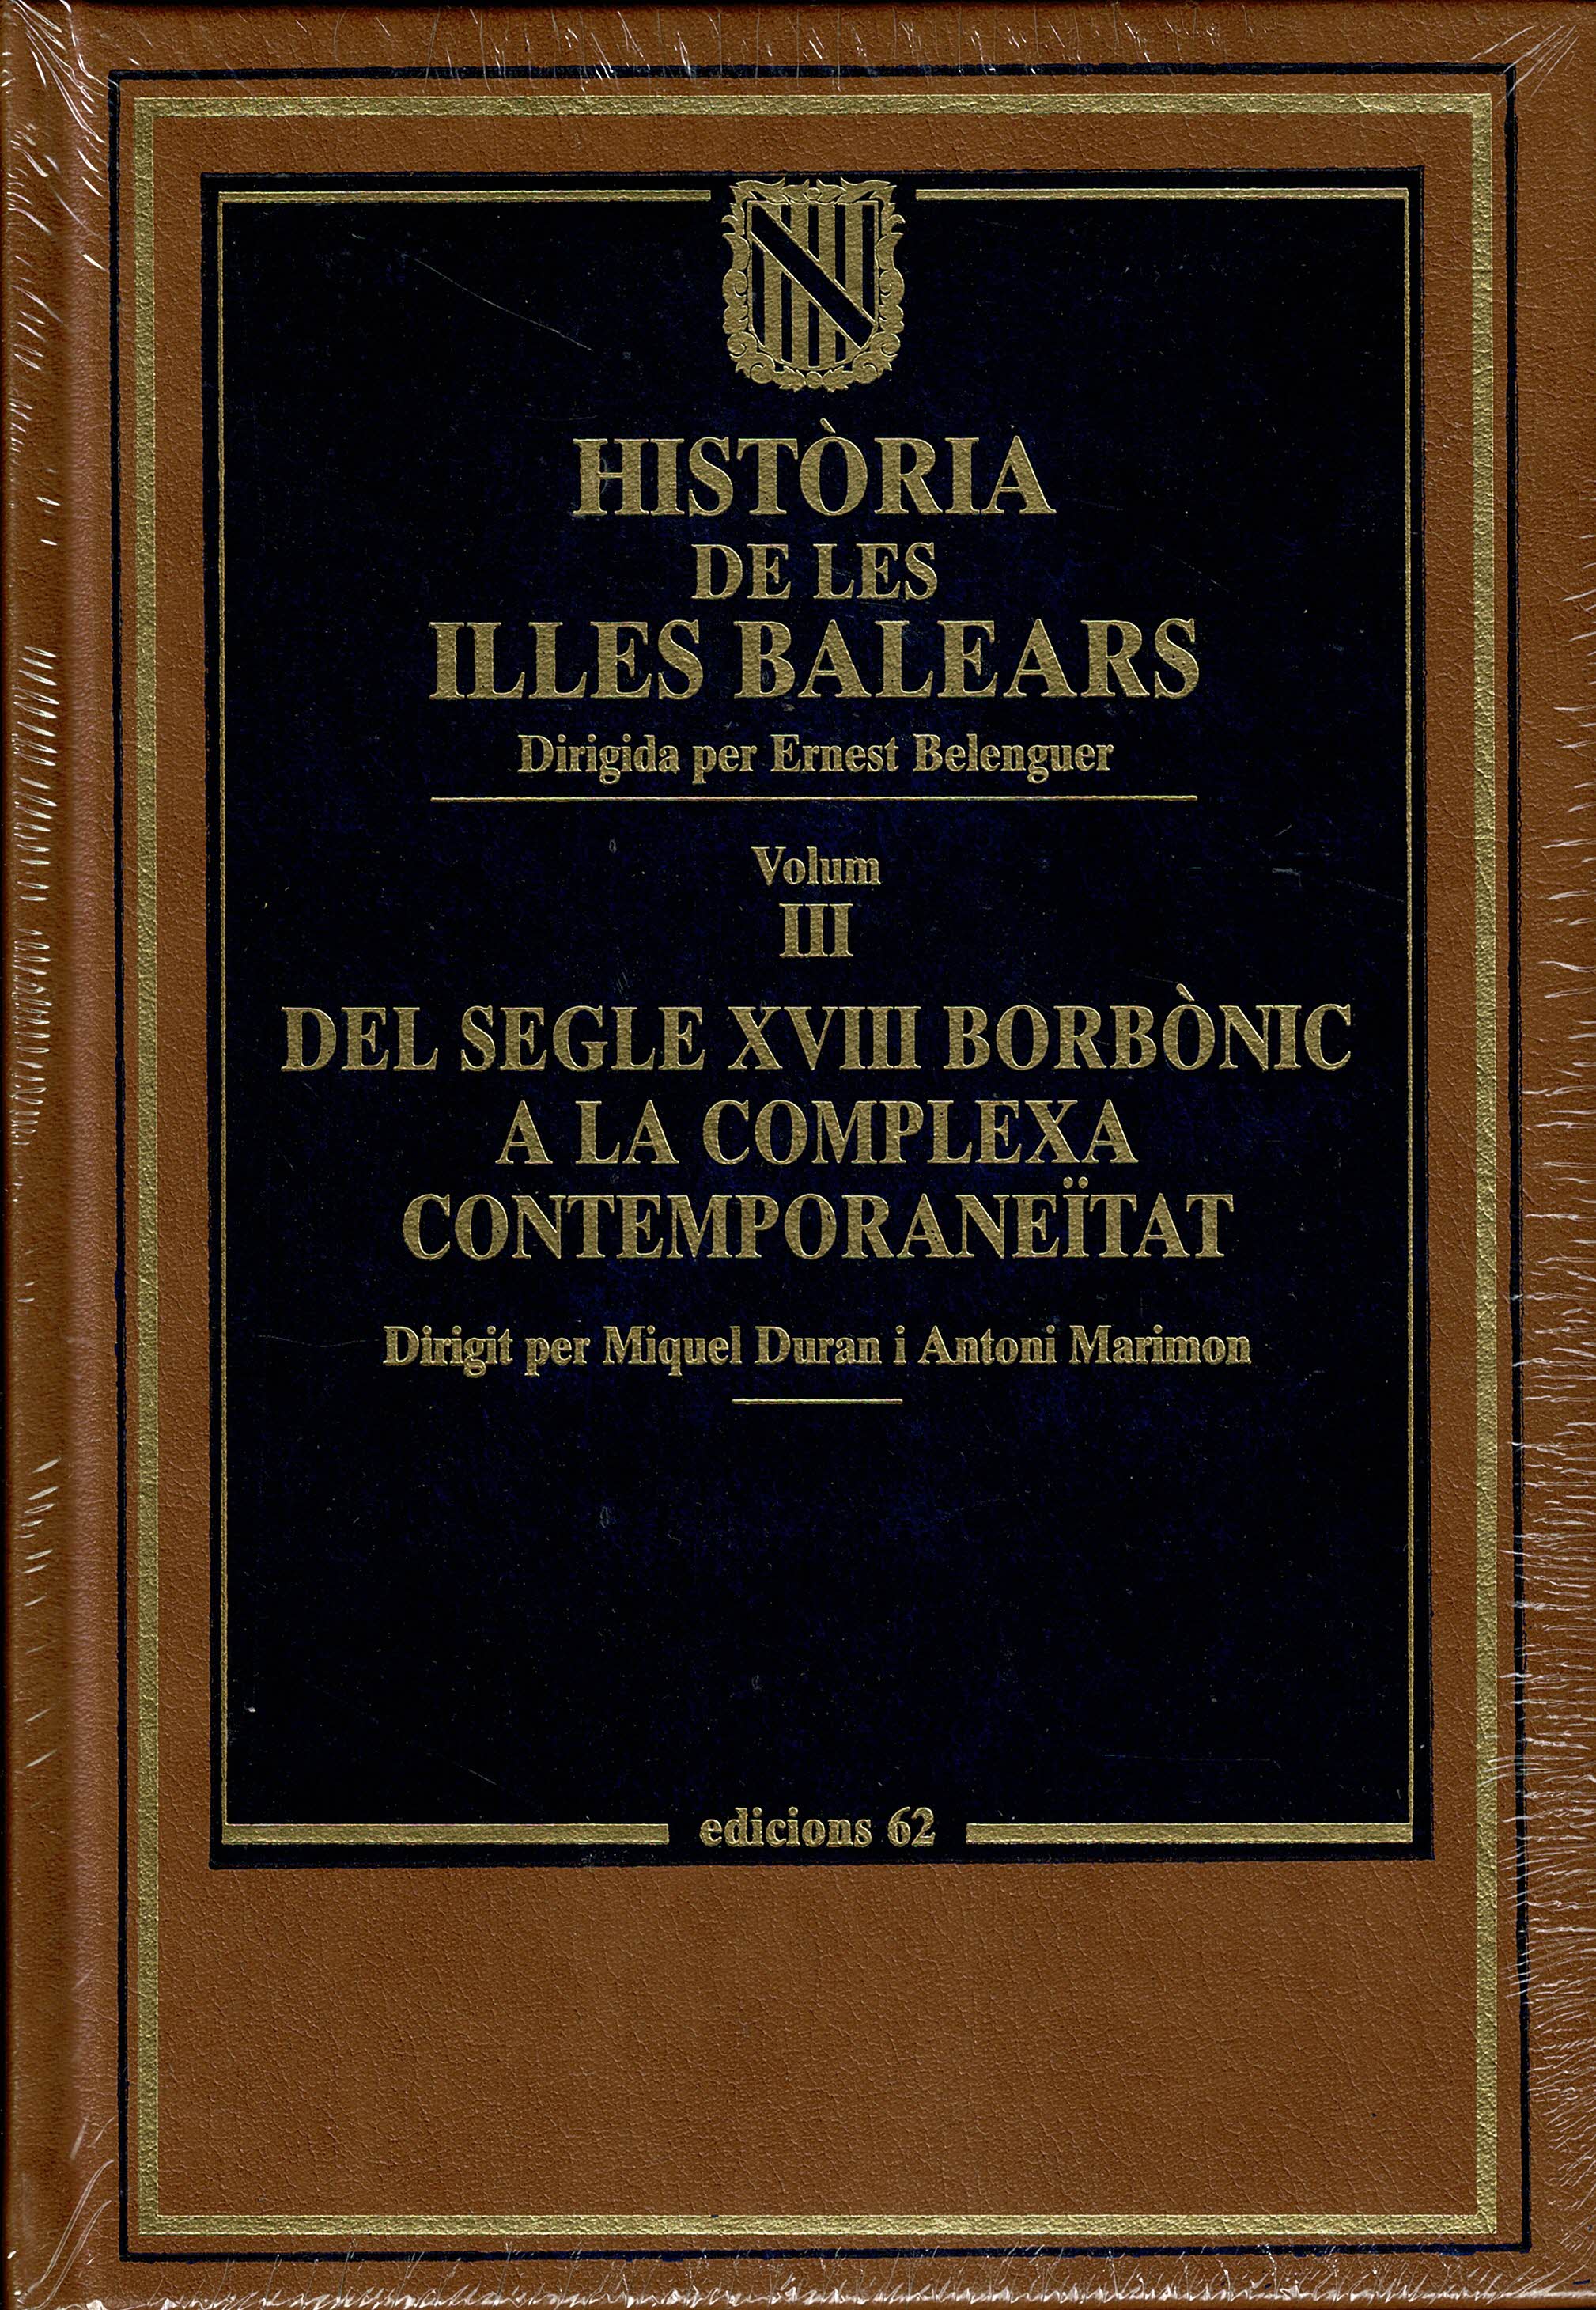 Història de les Illes Balears Vol 3  Del Segle XVIII Borbonic a la Complexa Contemporaneïtat  (Ediciones 62)